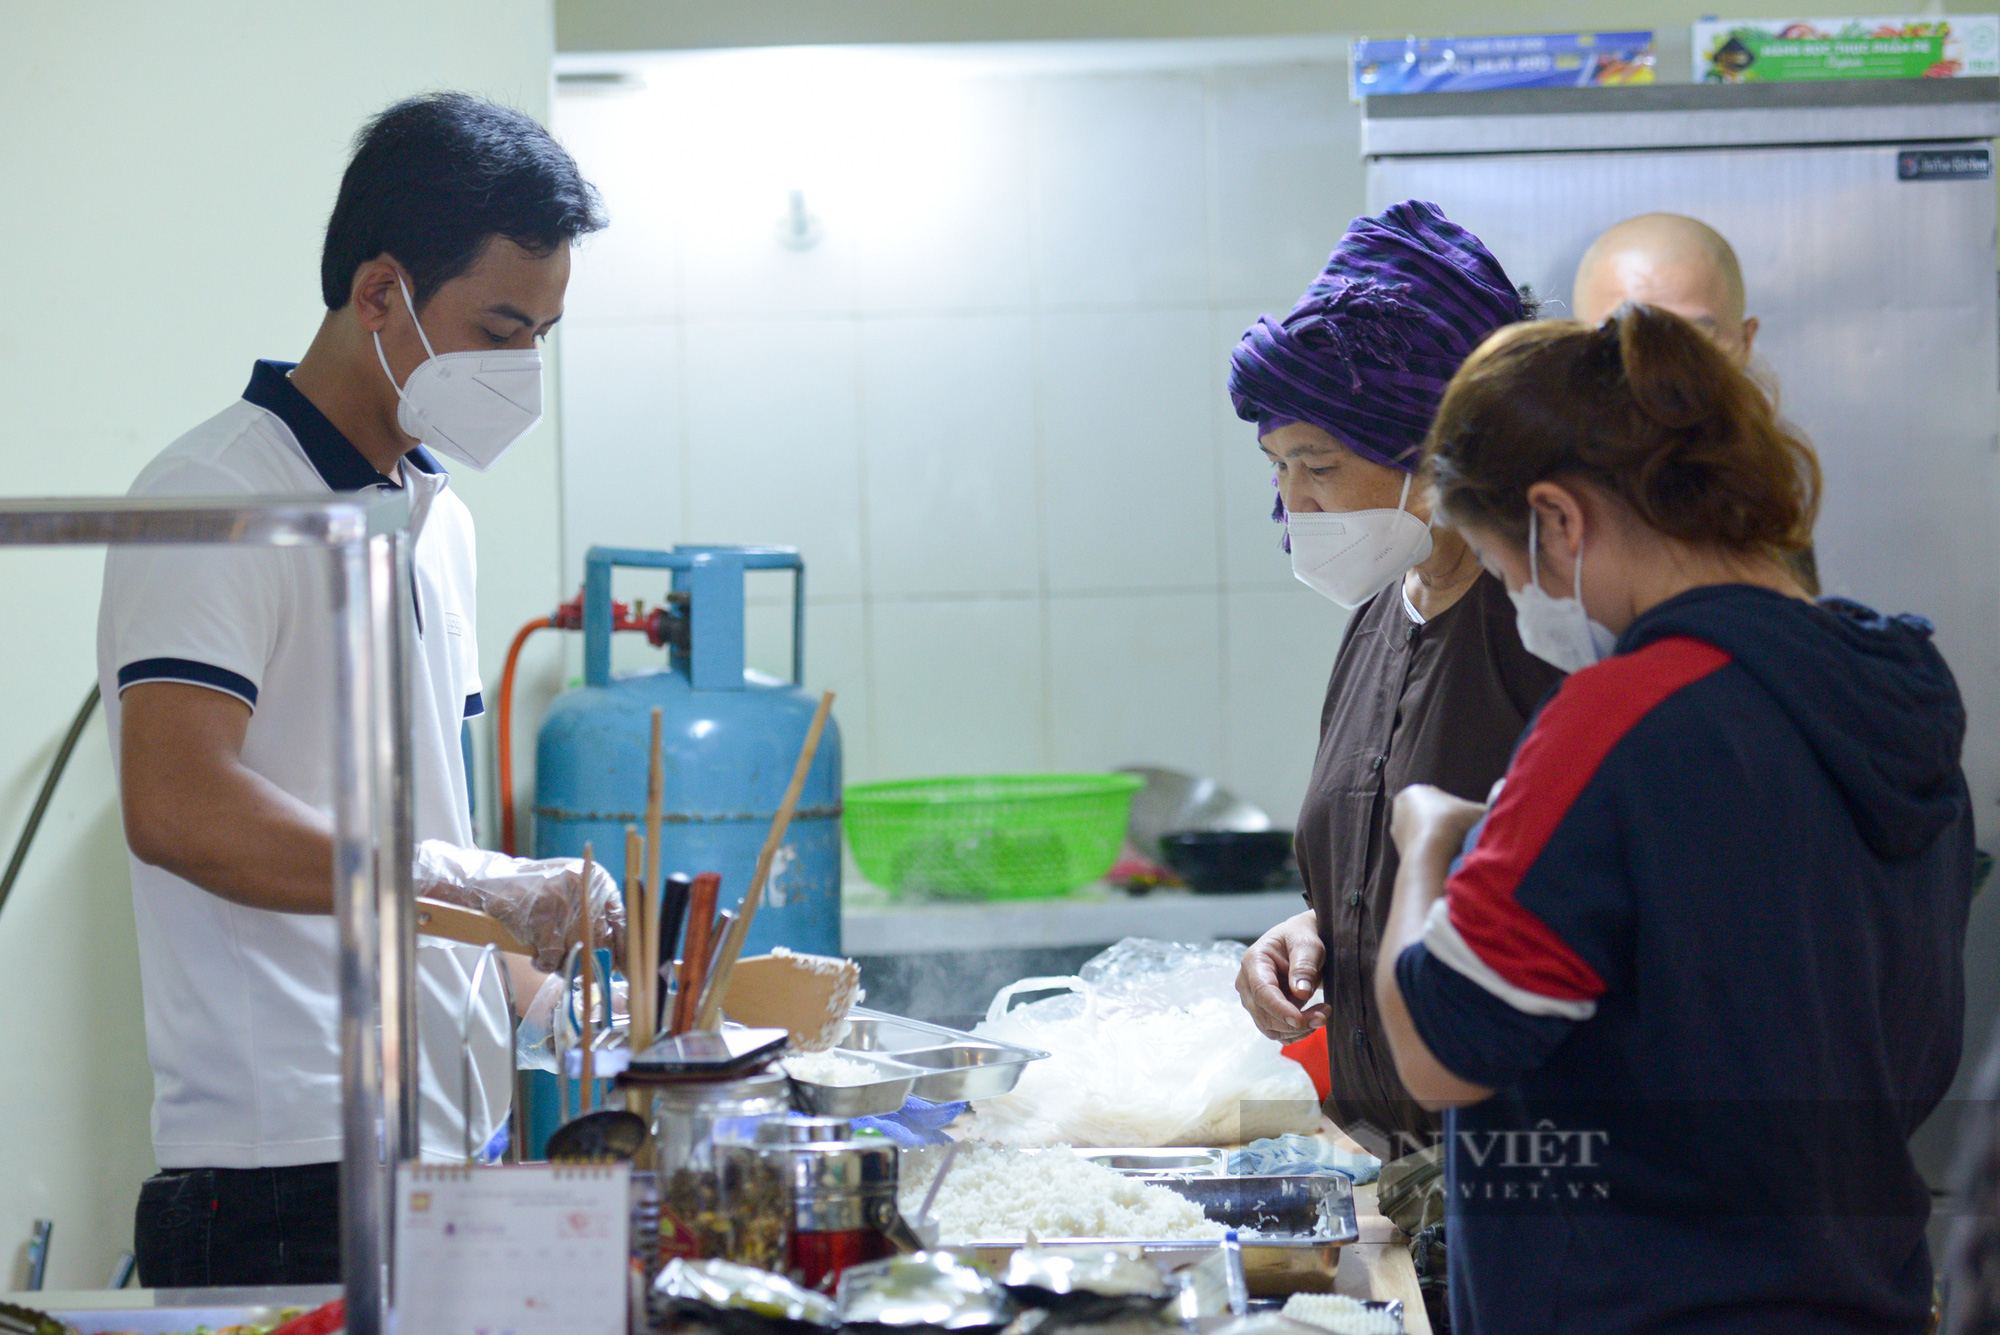 Quán ăn chay tại Hà Nội phục vụ 200 suất ăn mỗi ngày với giá 0 đồng  - Ảnh 3.